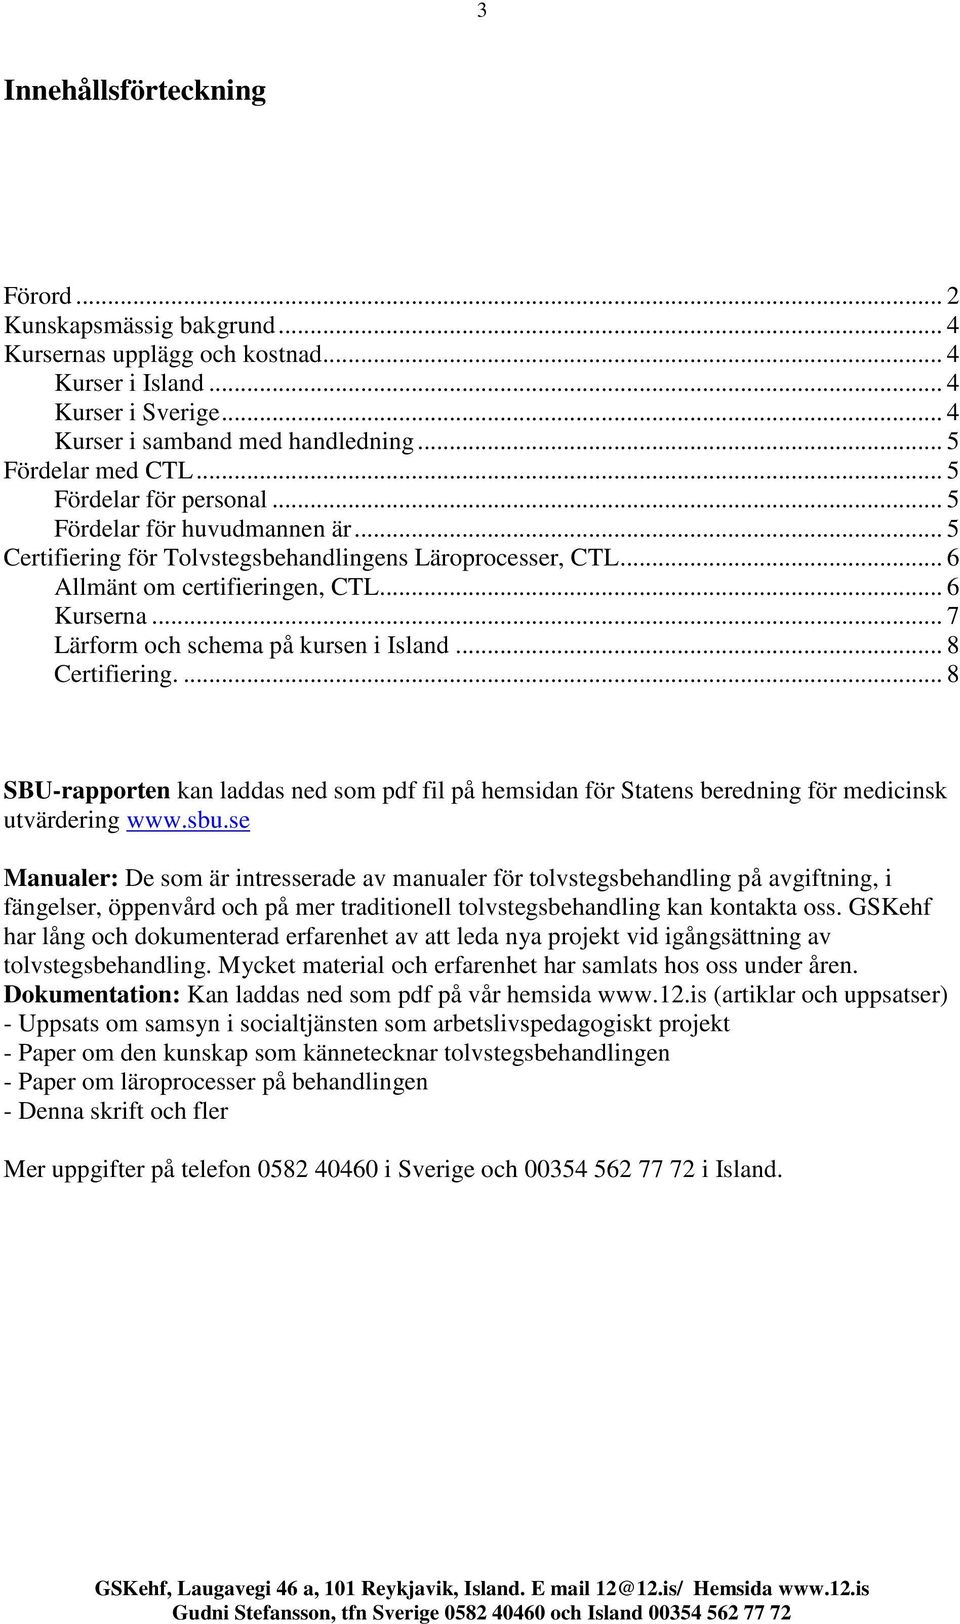 .. 7 Lärform och schema på kursen i Island... 8 Certifiering.... 8 SBU-rapporten kan laddas ned som pdf fil på hemsidan för Statens beredning för medicinsk utvärdering www.sbu.